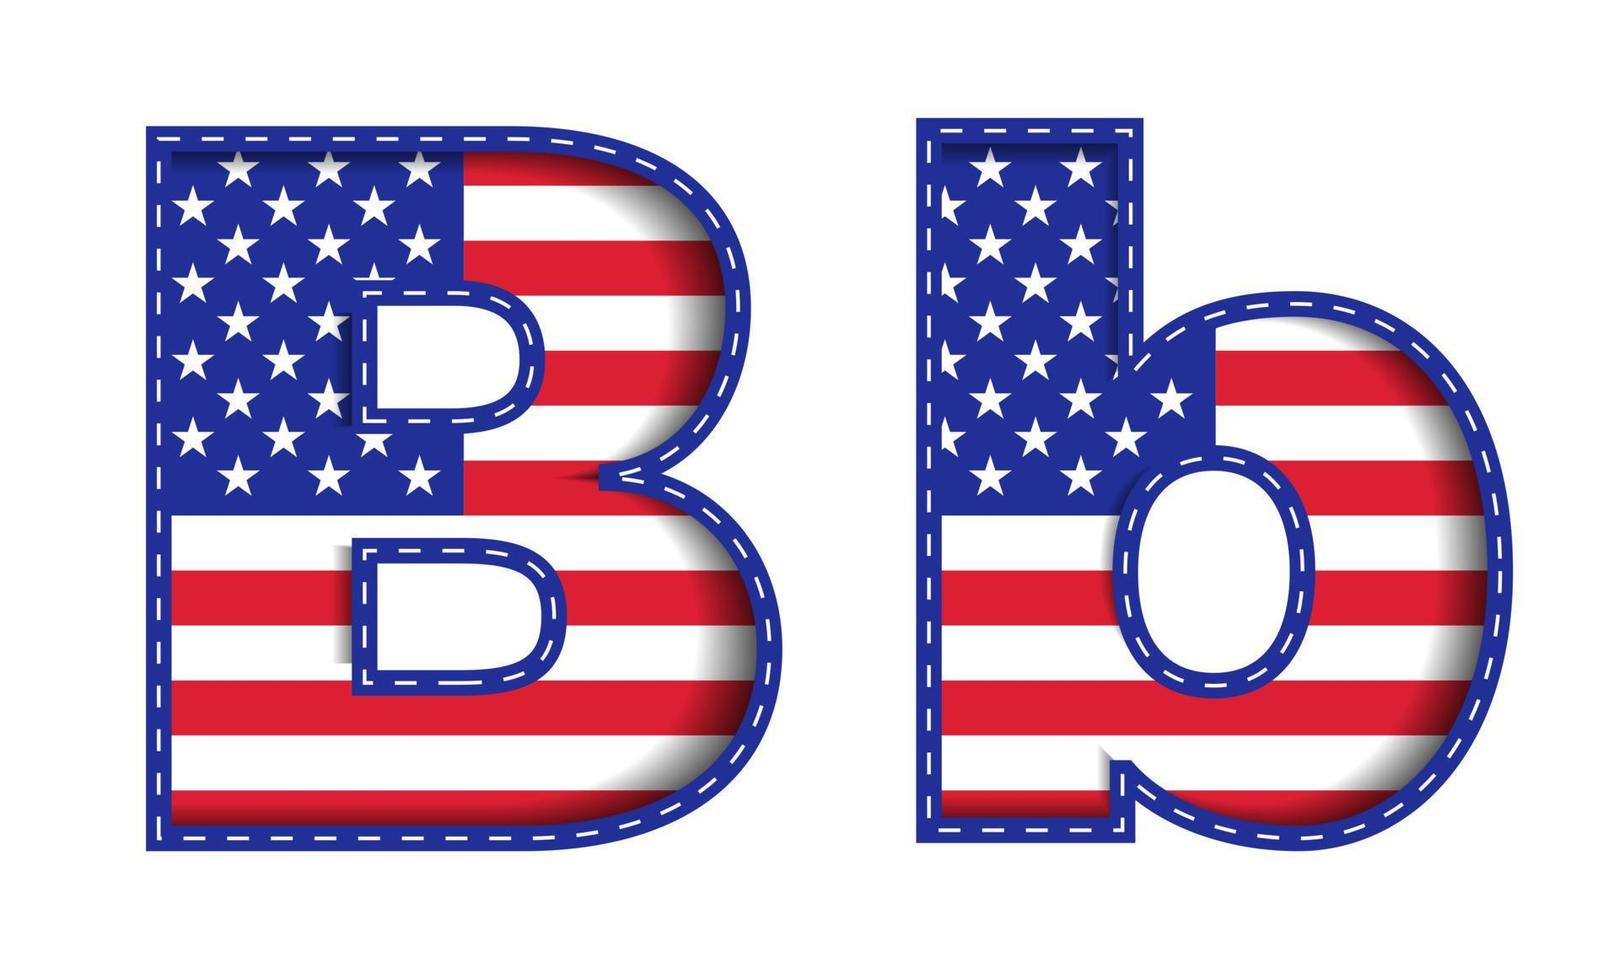 b alfabeto capitale lettera piccola usa indipendenza giorno commemorativo stati uniti d'america carattere carattere blu navy rosso stelle strisce bandiera nazionale sfondo bianco 3d ritaglio carta illustrazione vettoriale